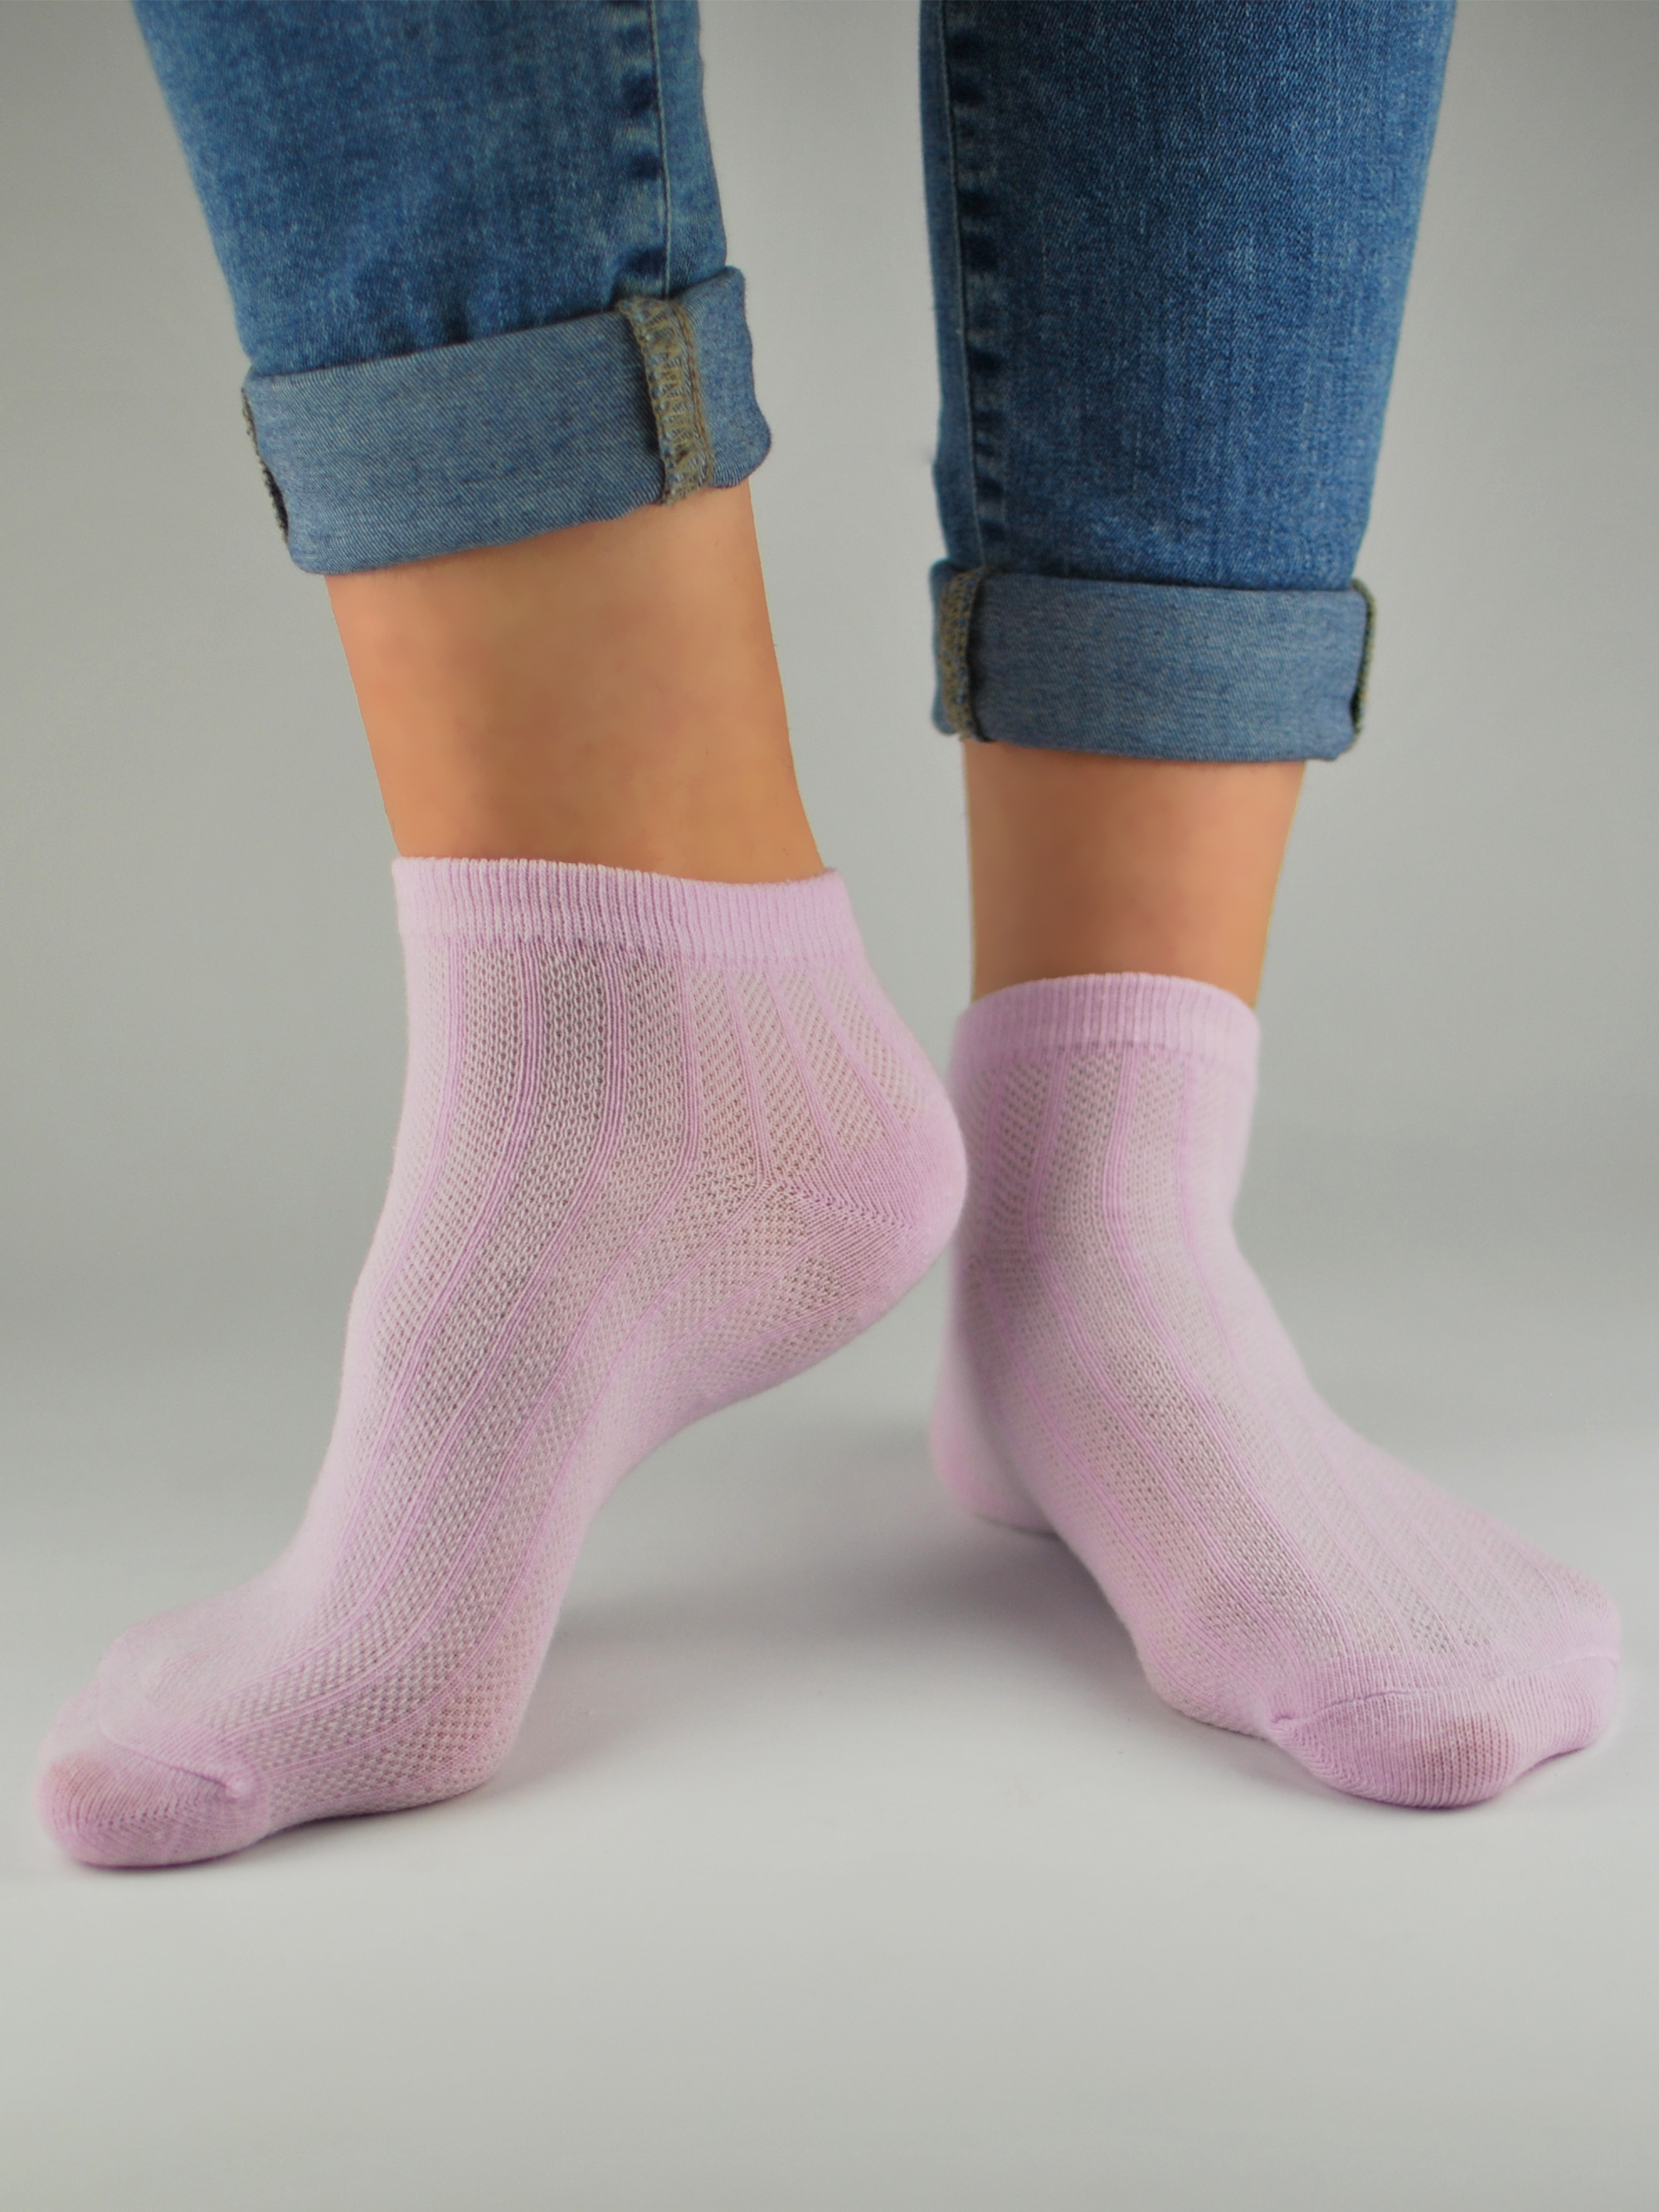 NOVITI Woman's Socks ST021-W-02